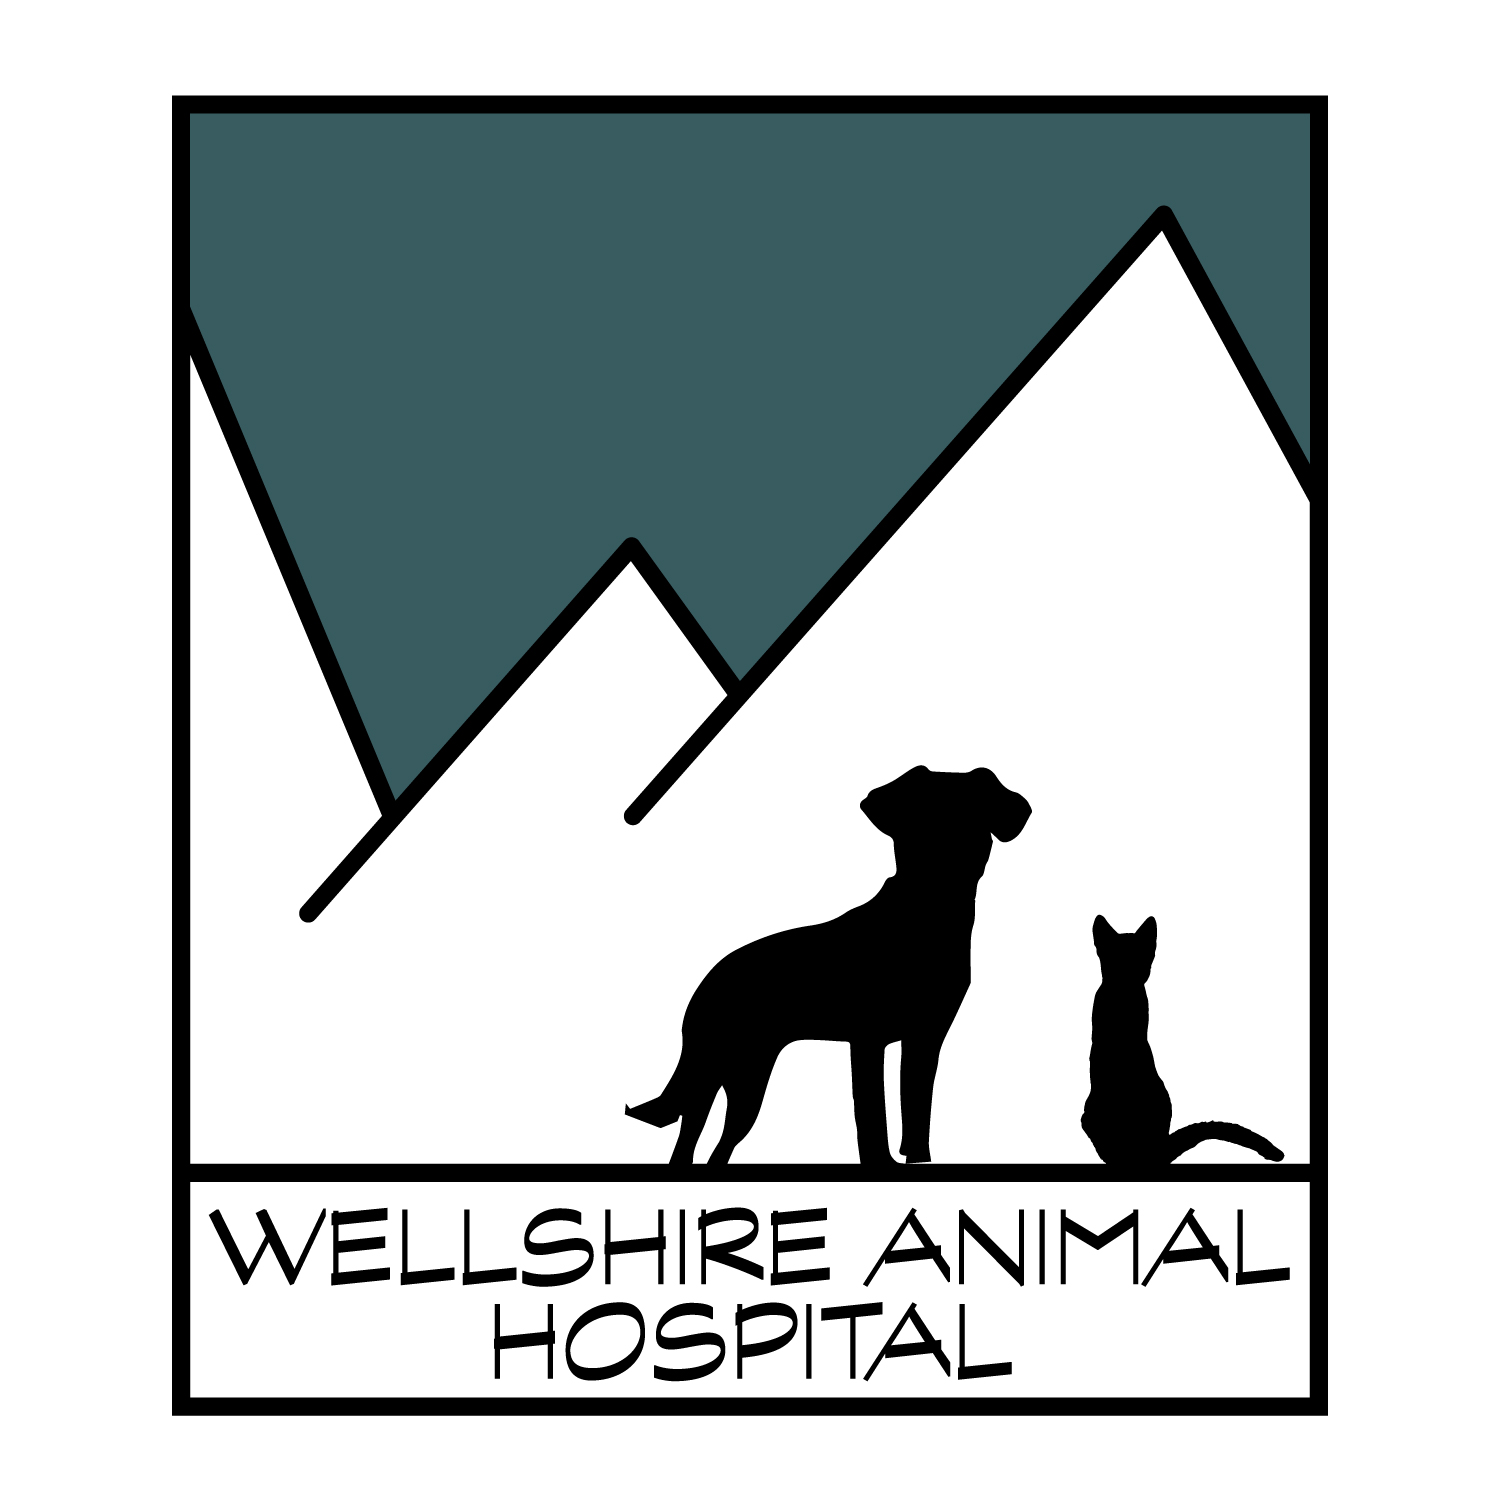 Wellshire Animal Hospital